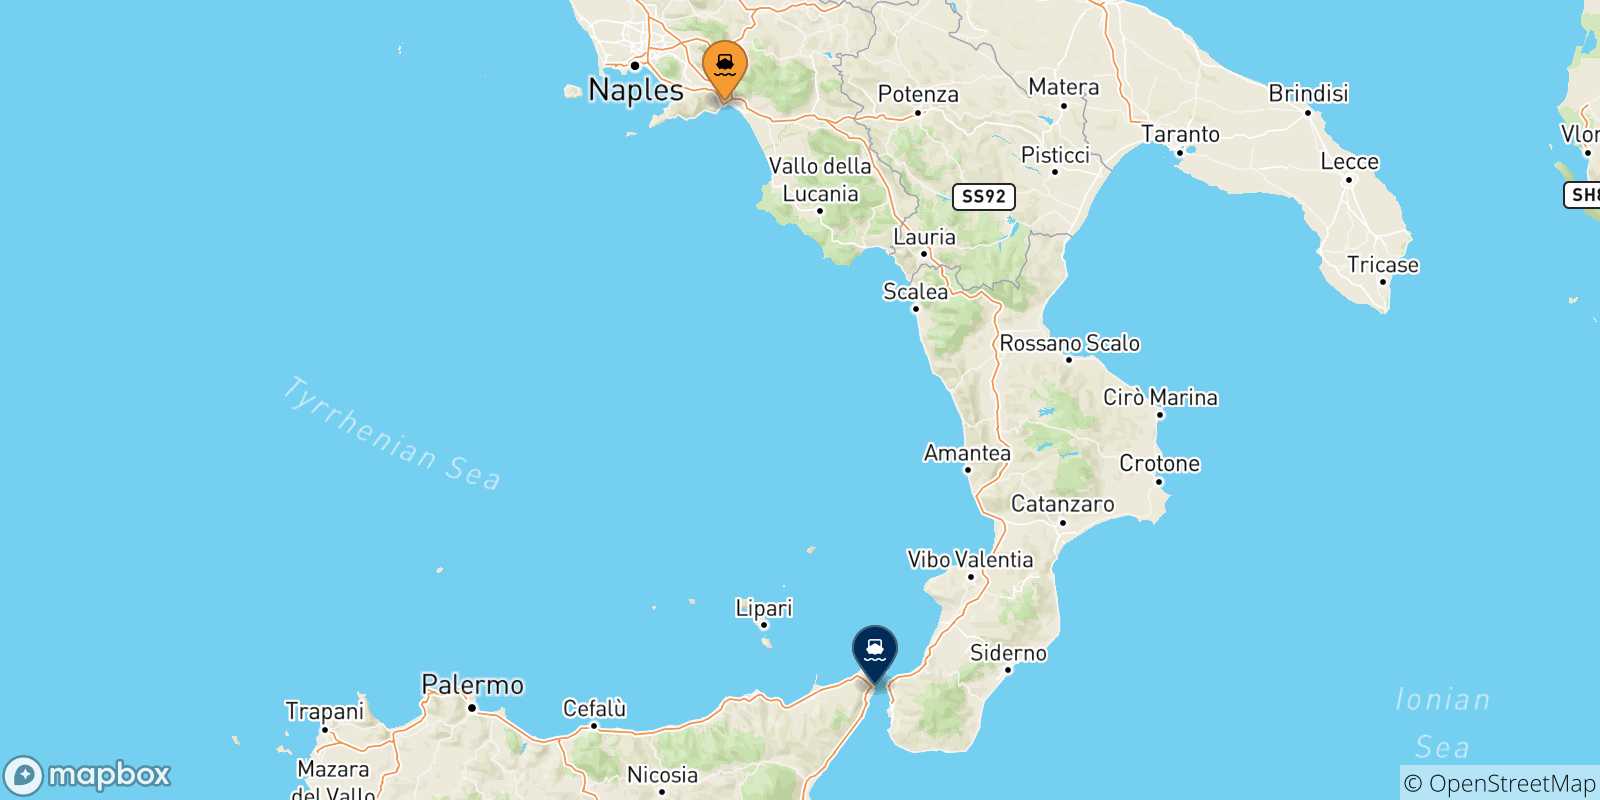 Mappa delle possibili rotte tra l'Italia e Messina